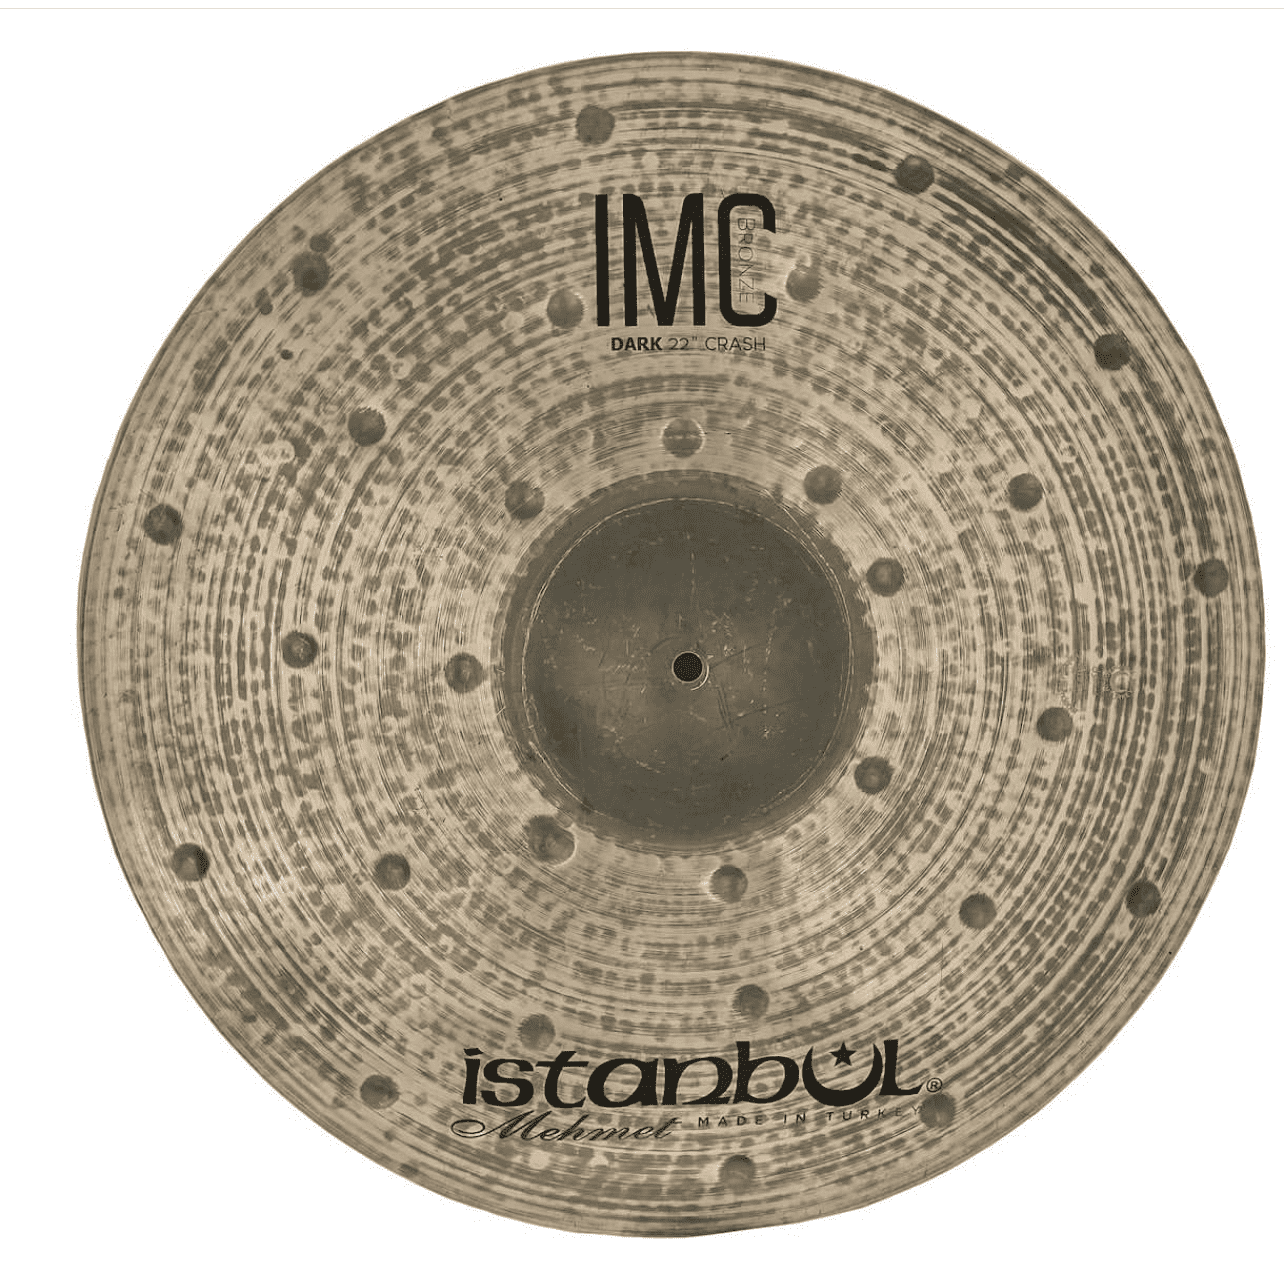 מצילת קראש Istanbul Mehmet IMC Dark "22 Crash Cymbal